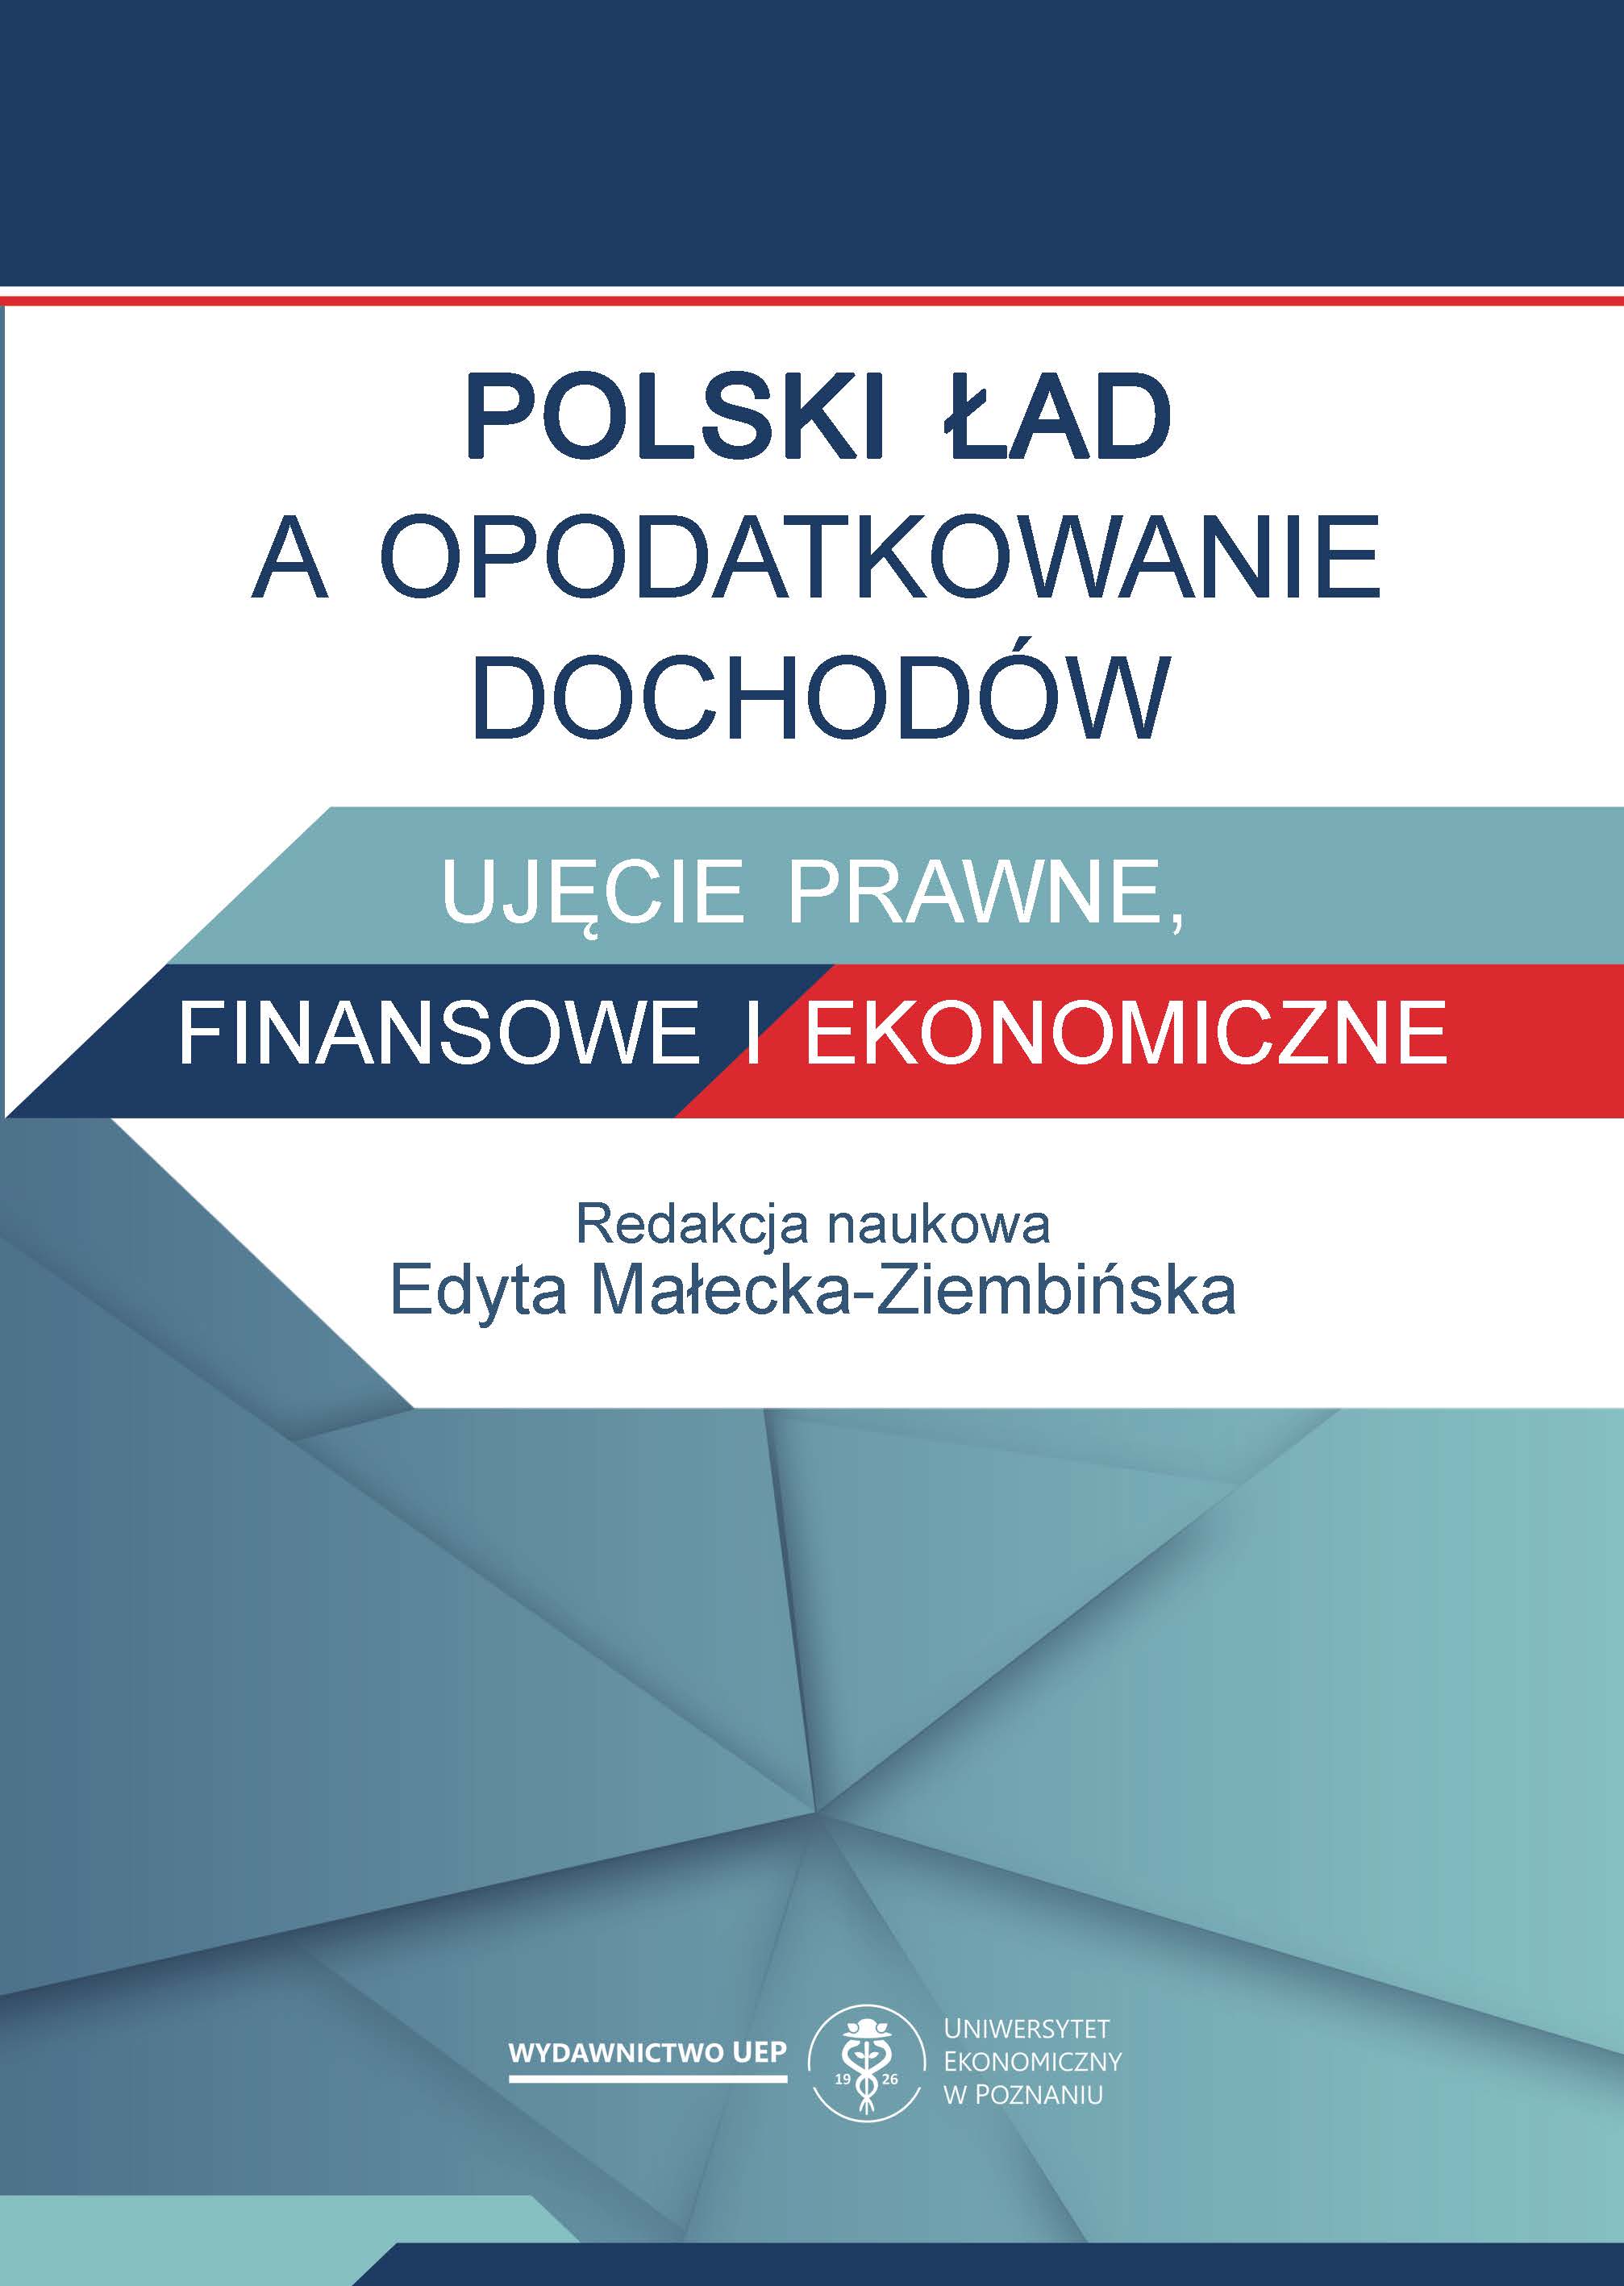 Polski Ład z perspektywy opodatkowania dochodów osób prawnych